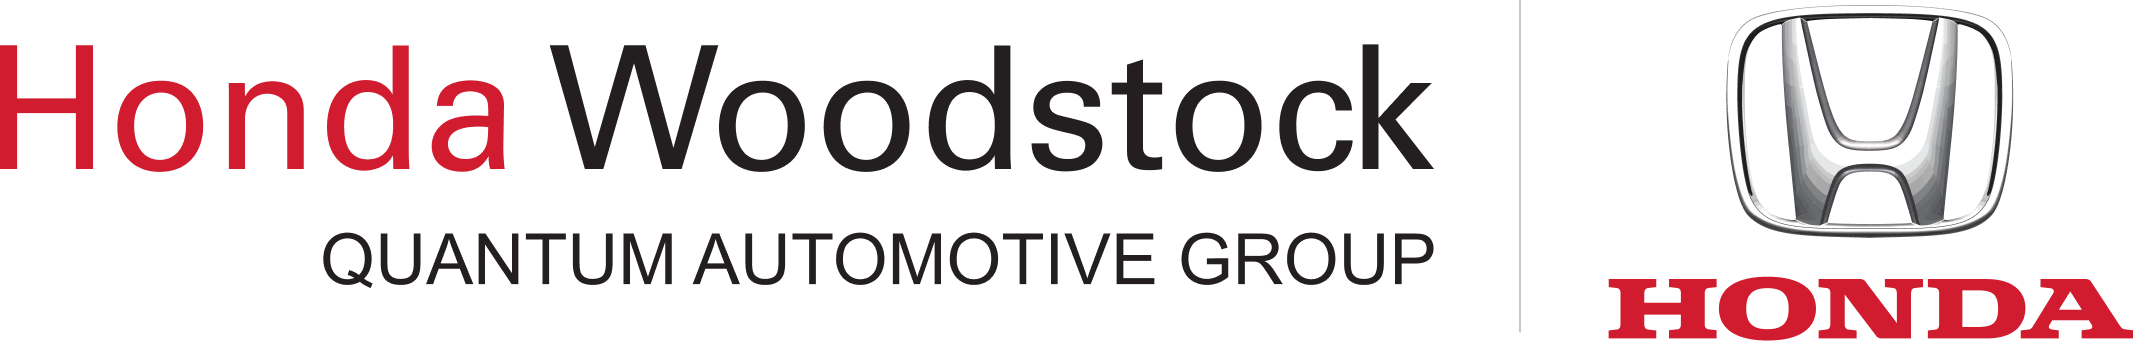 Honda Woodstock logo